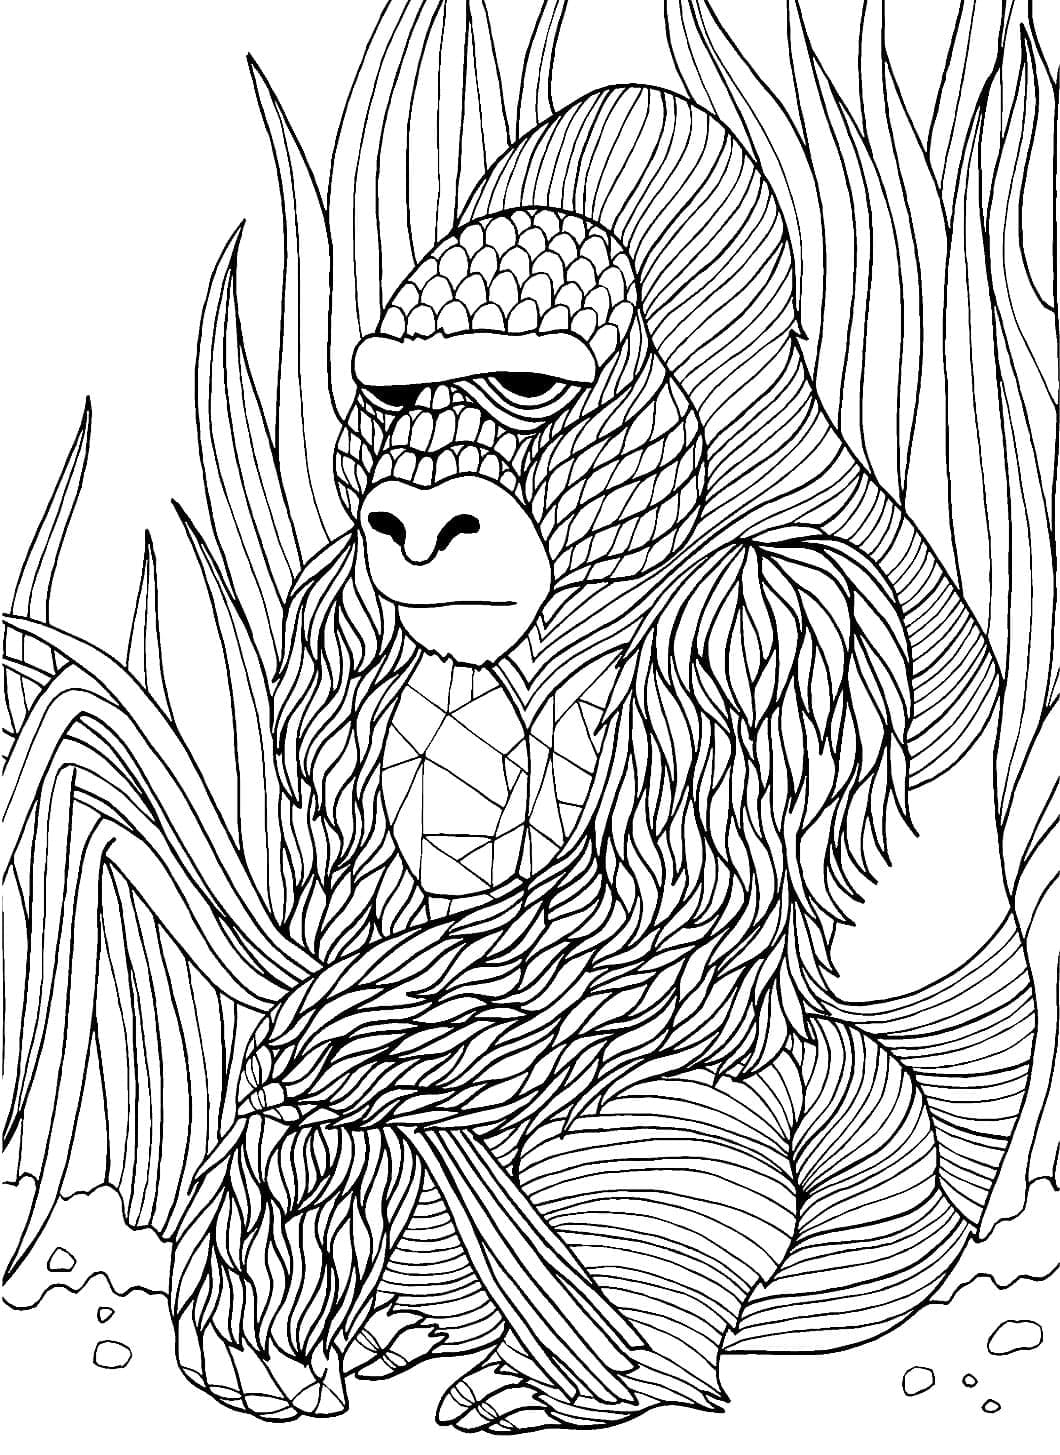 Coloriage Image De Gorille à imprimer